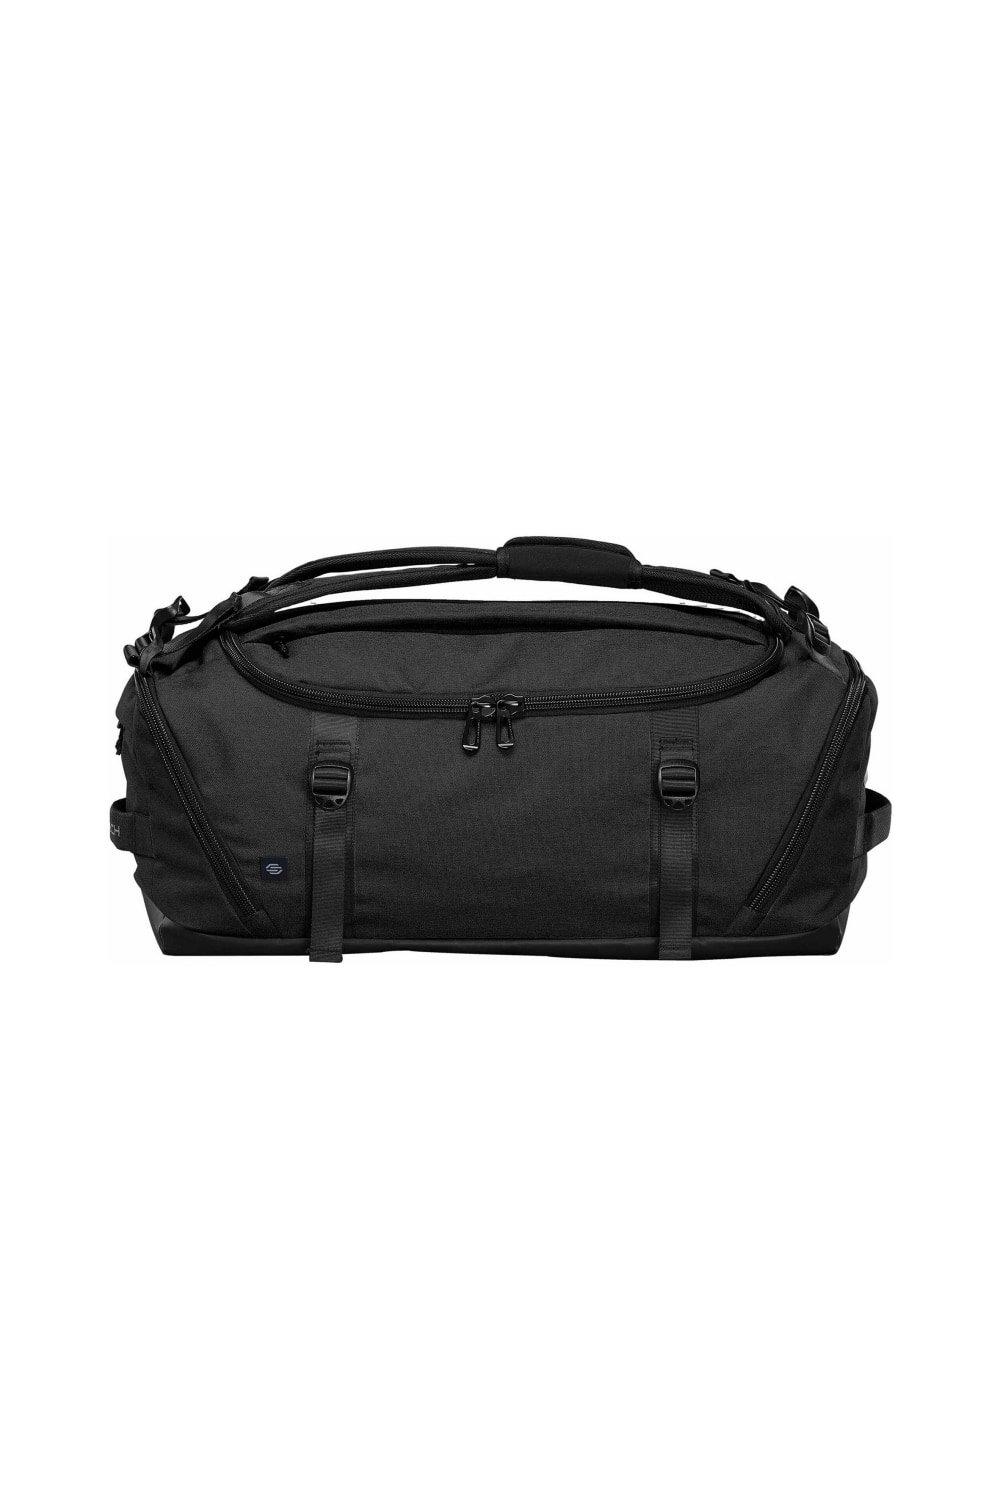 Спортивная сумка Equinox 30 Stormtech, черный двойной плечевой ремень w формы удобный экономичный мягкий ремень для кустореза триммера садового секатора